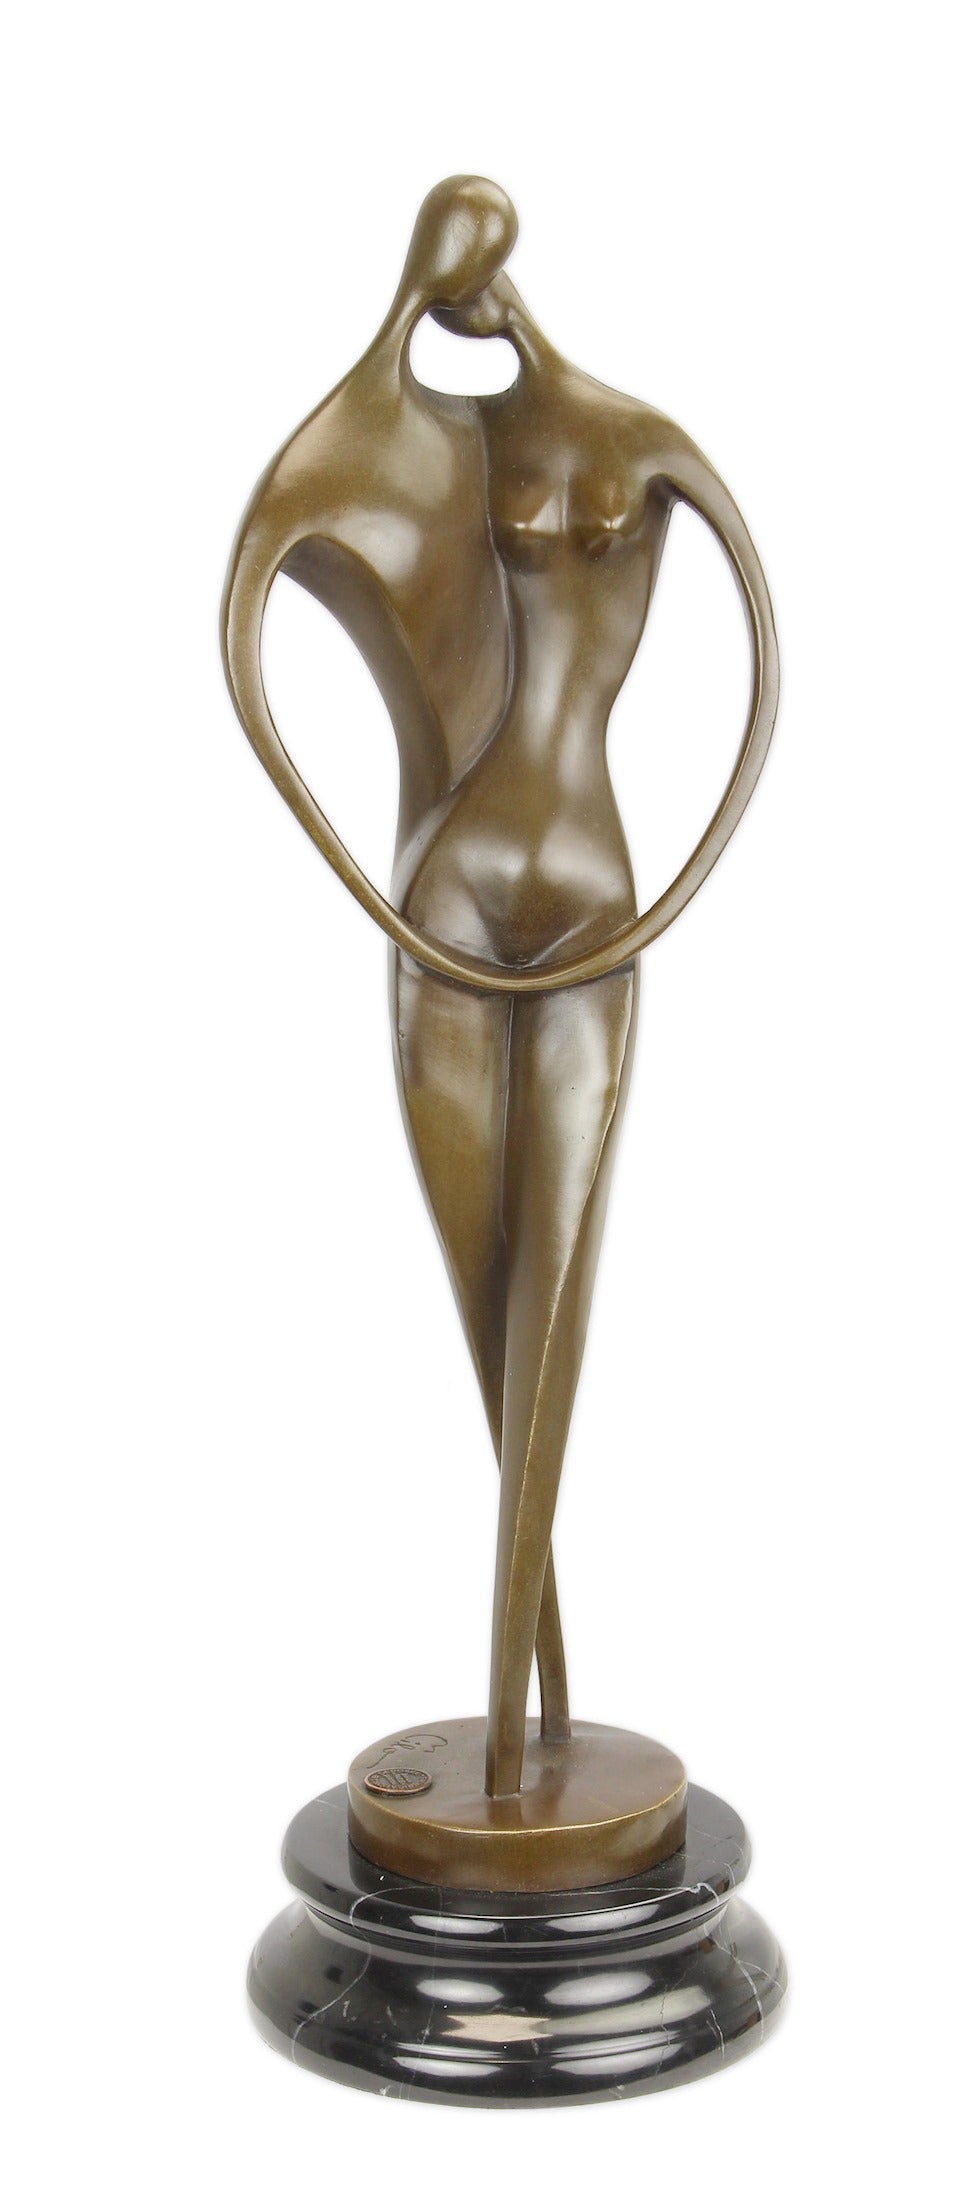 Bronzen beeld Liefde, symbool voor de liefde tussen man en vrouw, uniek als geschenk voor uw partner of bij een huwelijk(sjubileum)